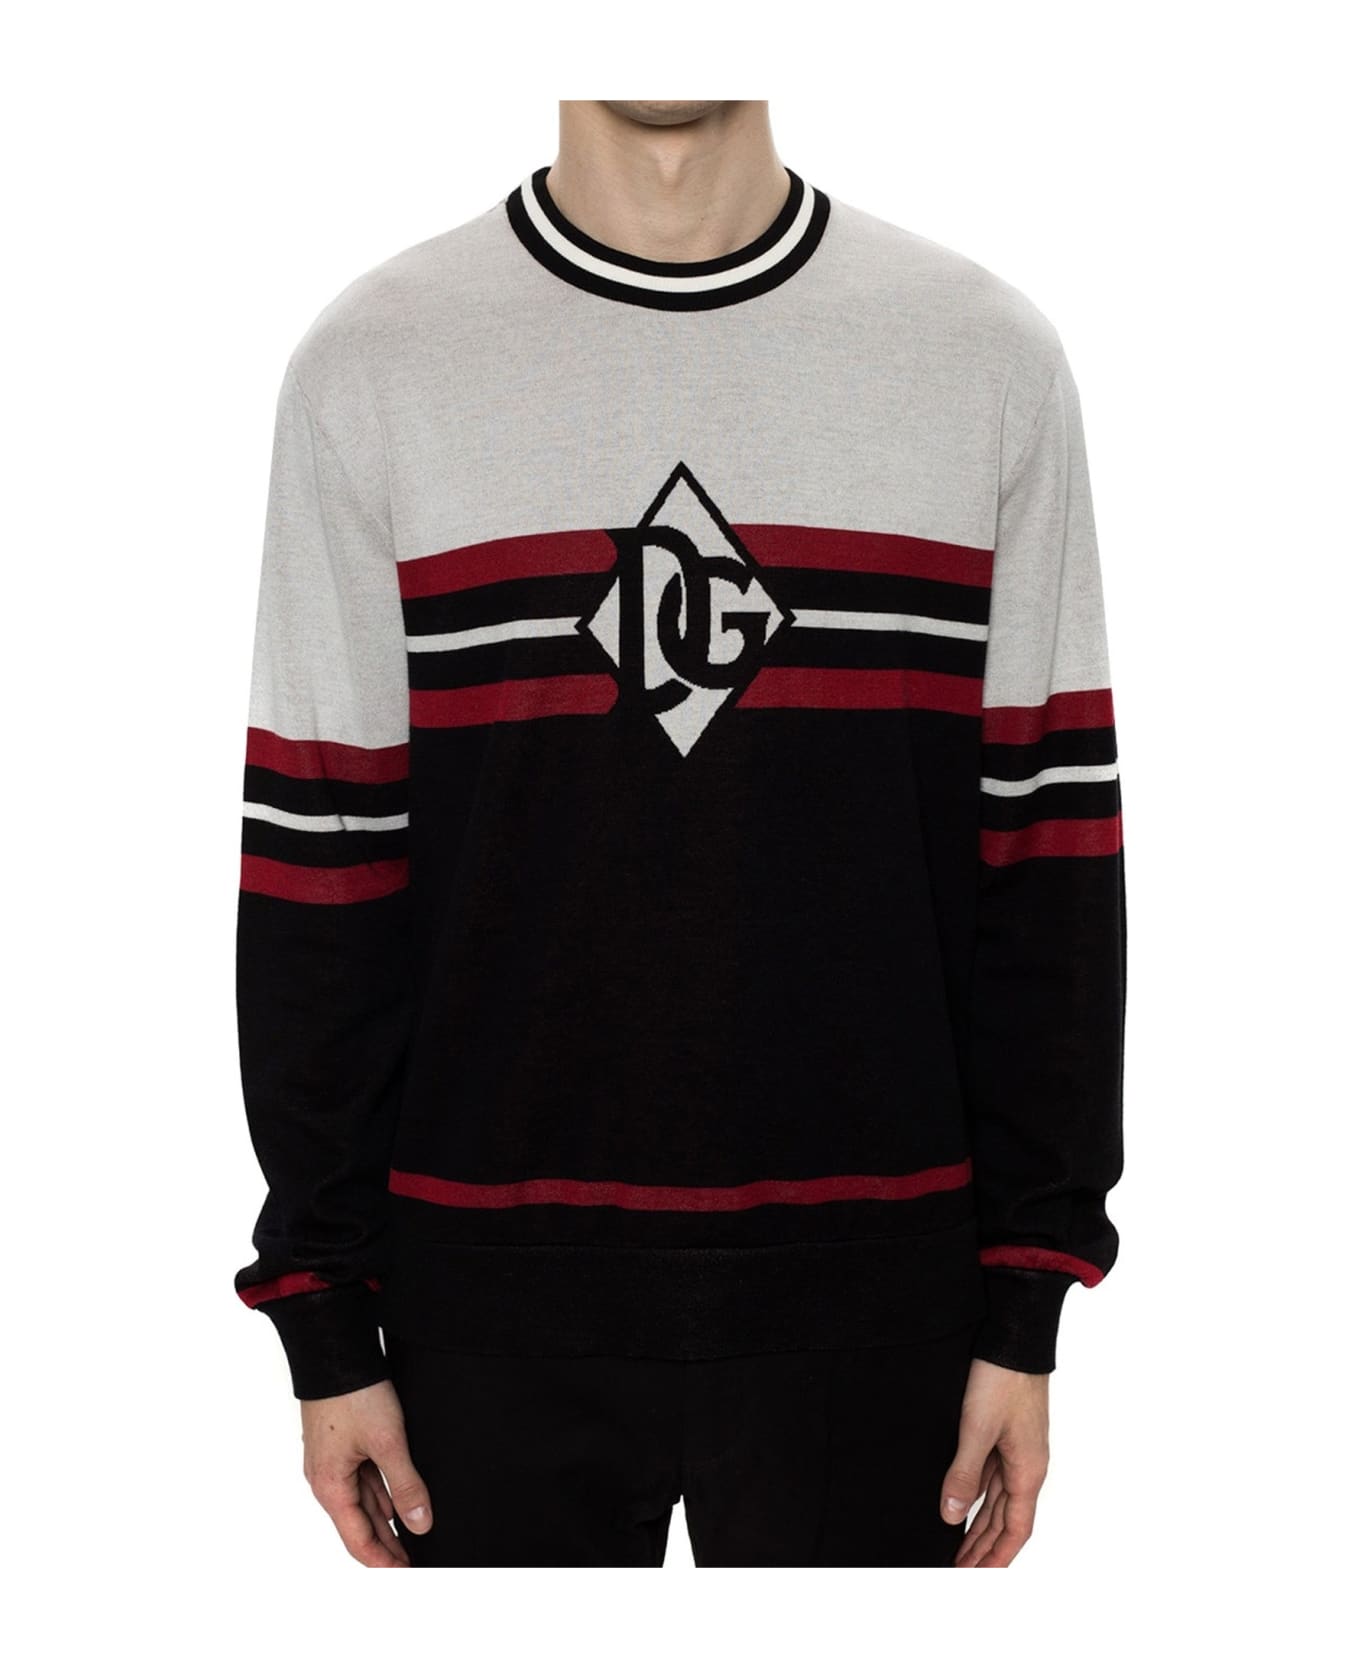 Dolce & Gabbana Logo Sweater - Black